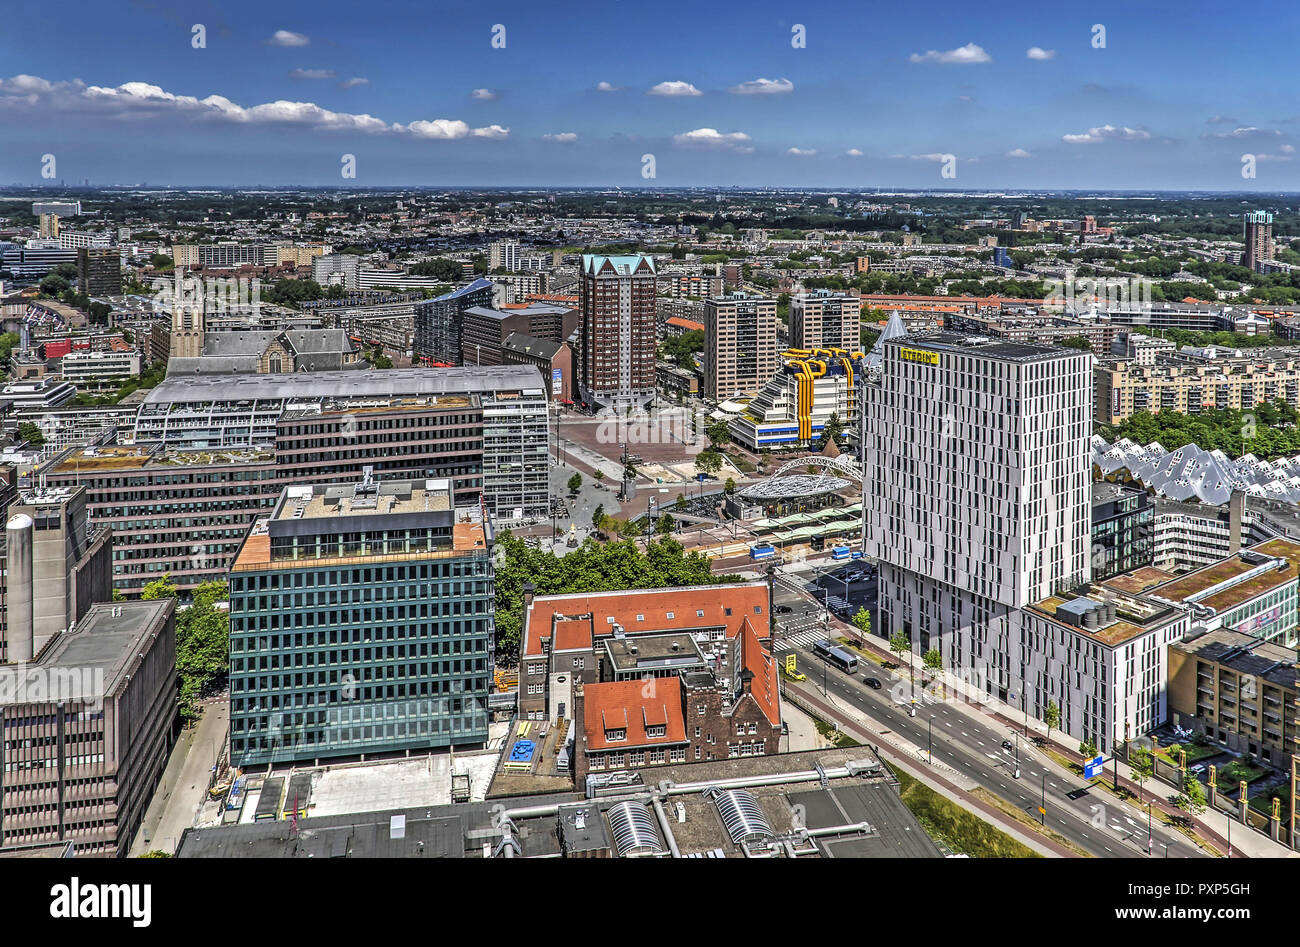 Rotterdam, Paesi Bassi, 18 Giugno 2017: vista aerea dell'area del centro cittadino circa le origini della città con edifici moderni tra cui Markthal, librar Foto Stock